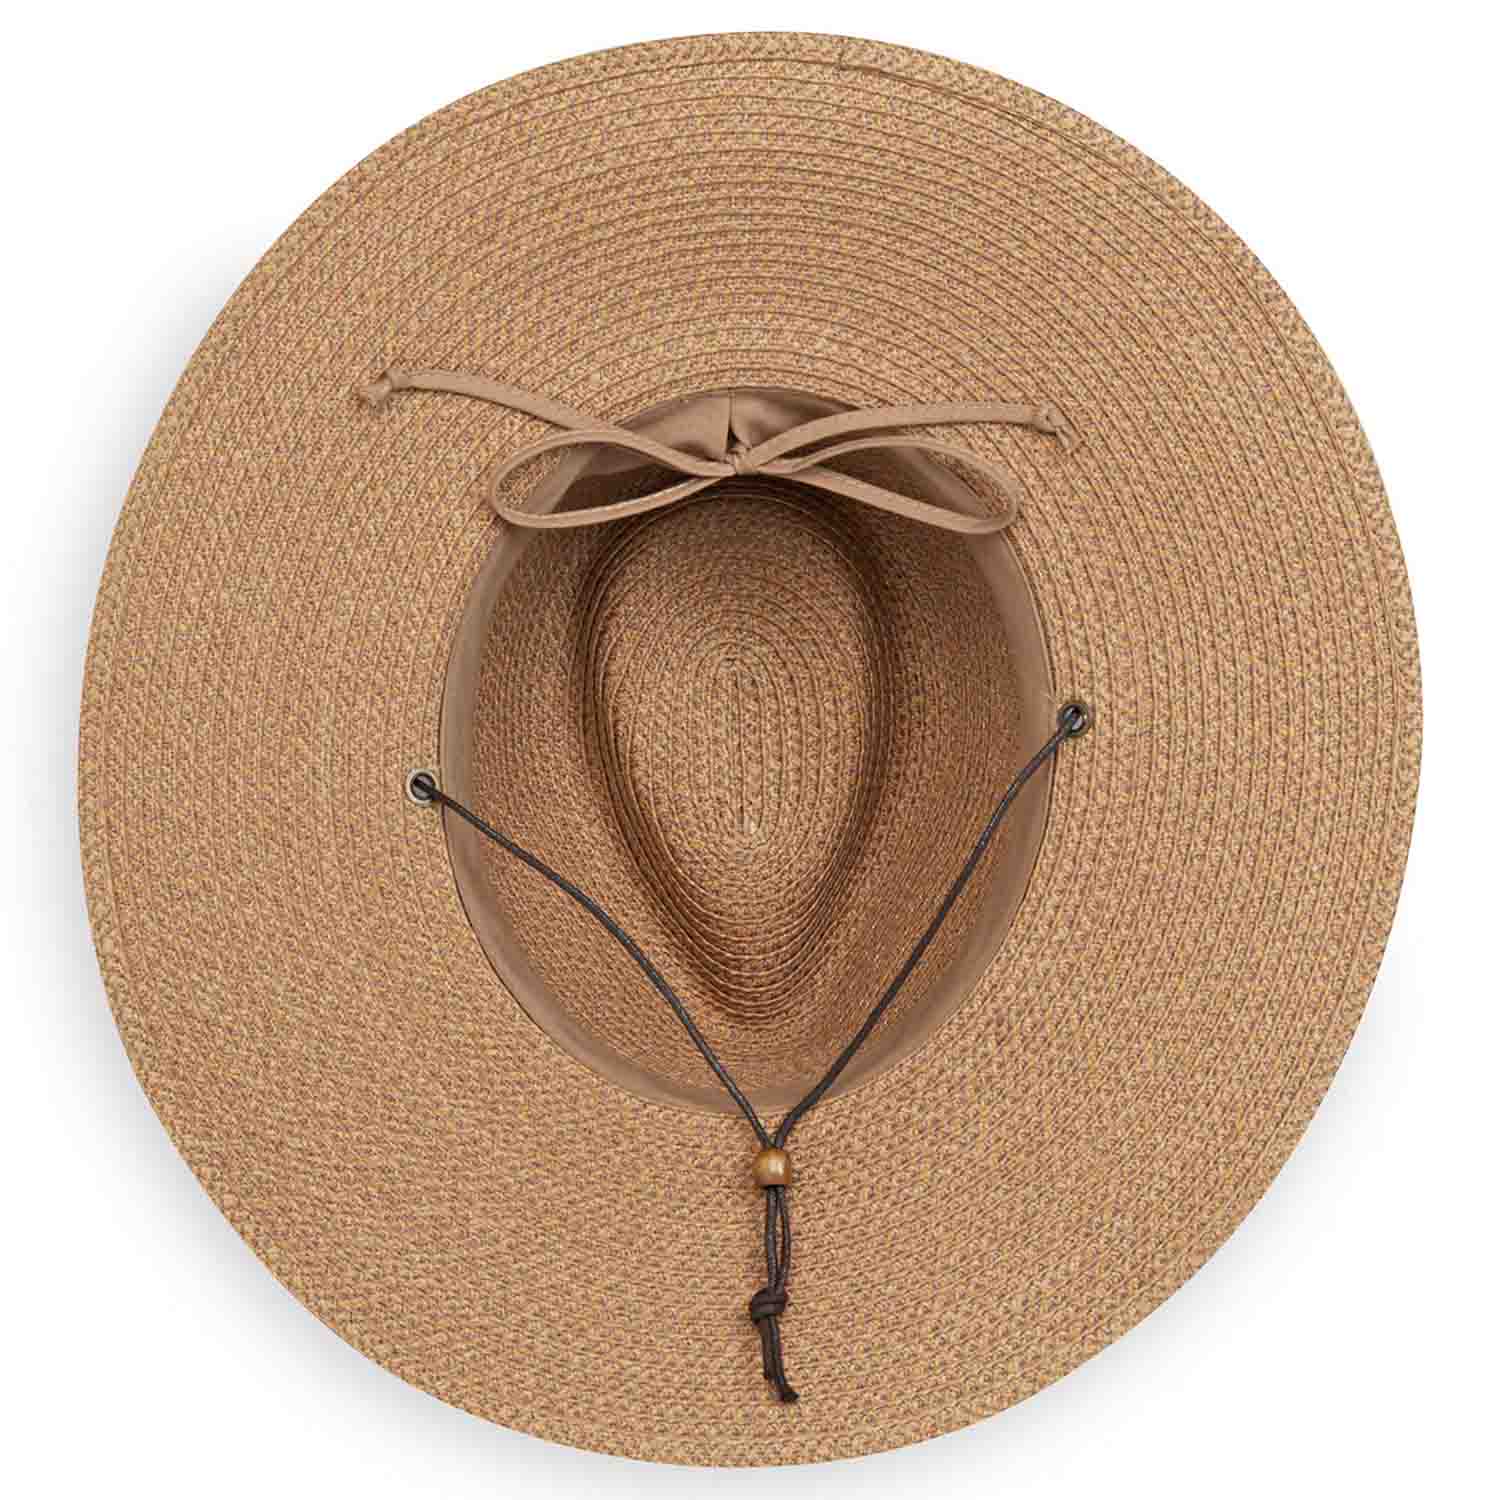 Men's Outback Sun Hat, Wallaroo Hats